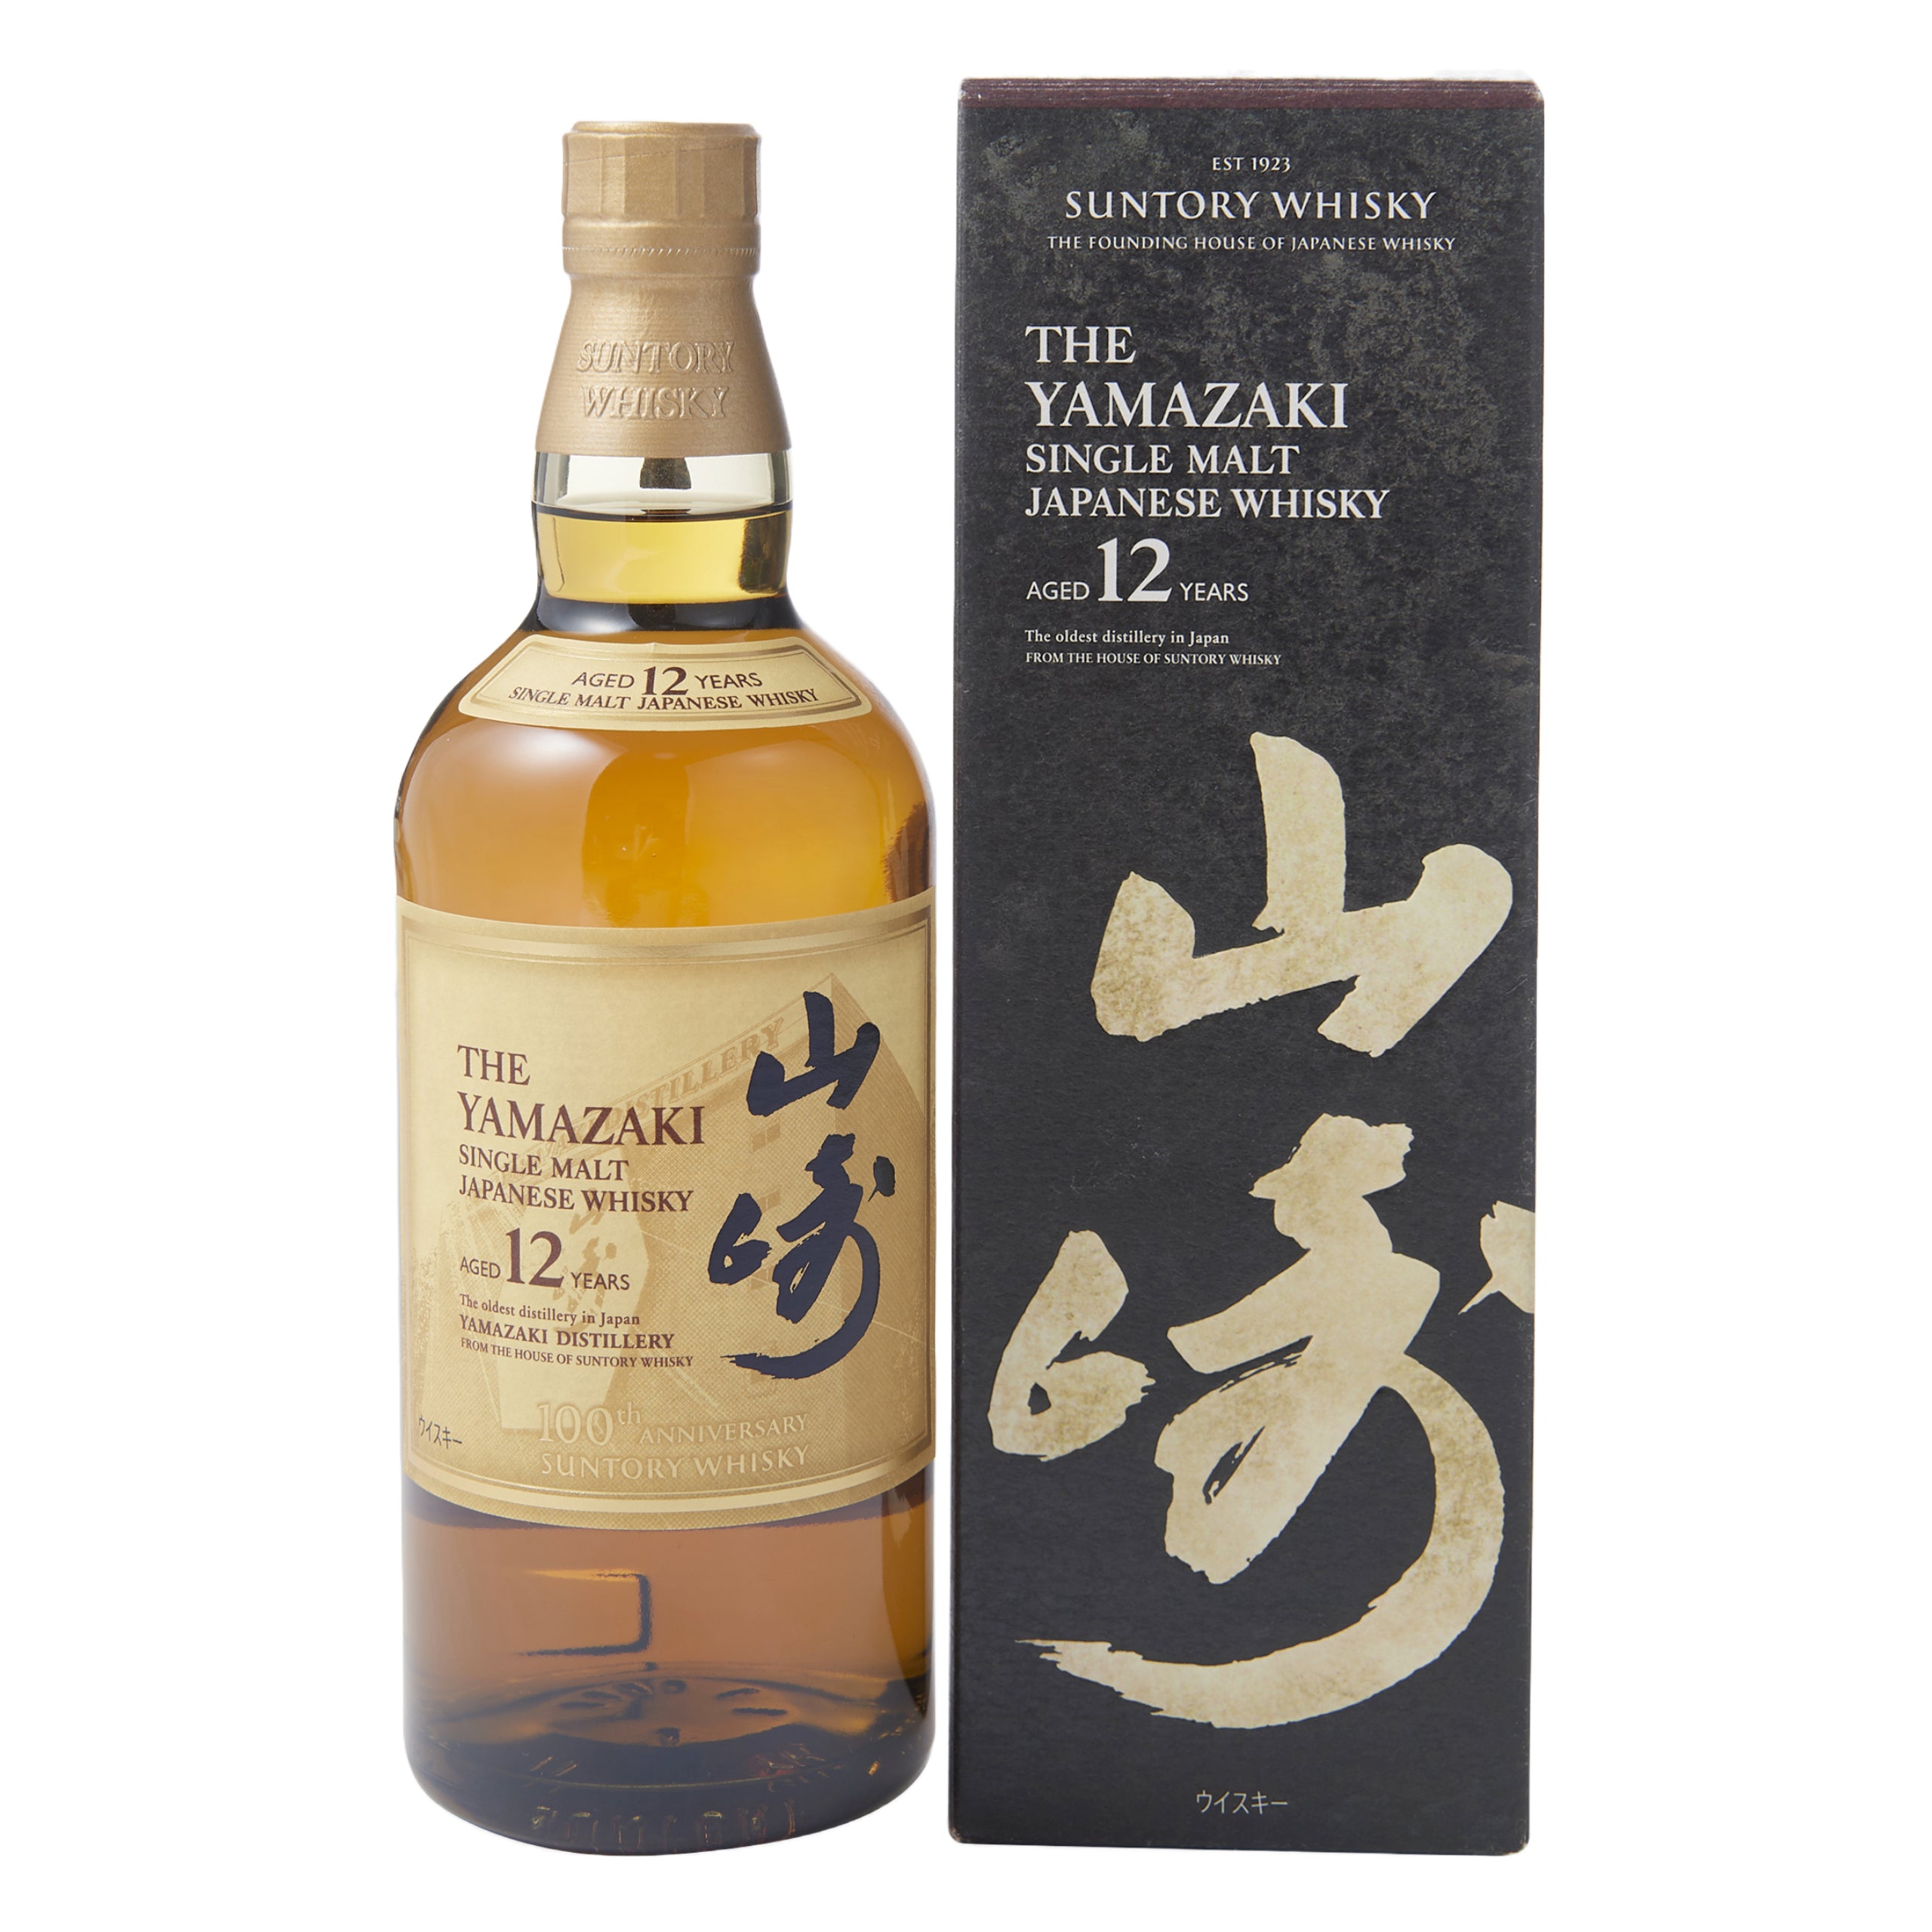 The Yamazaki 12 Years Old Japanese Single Malt Whisky